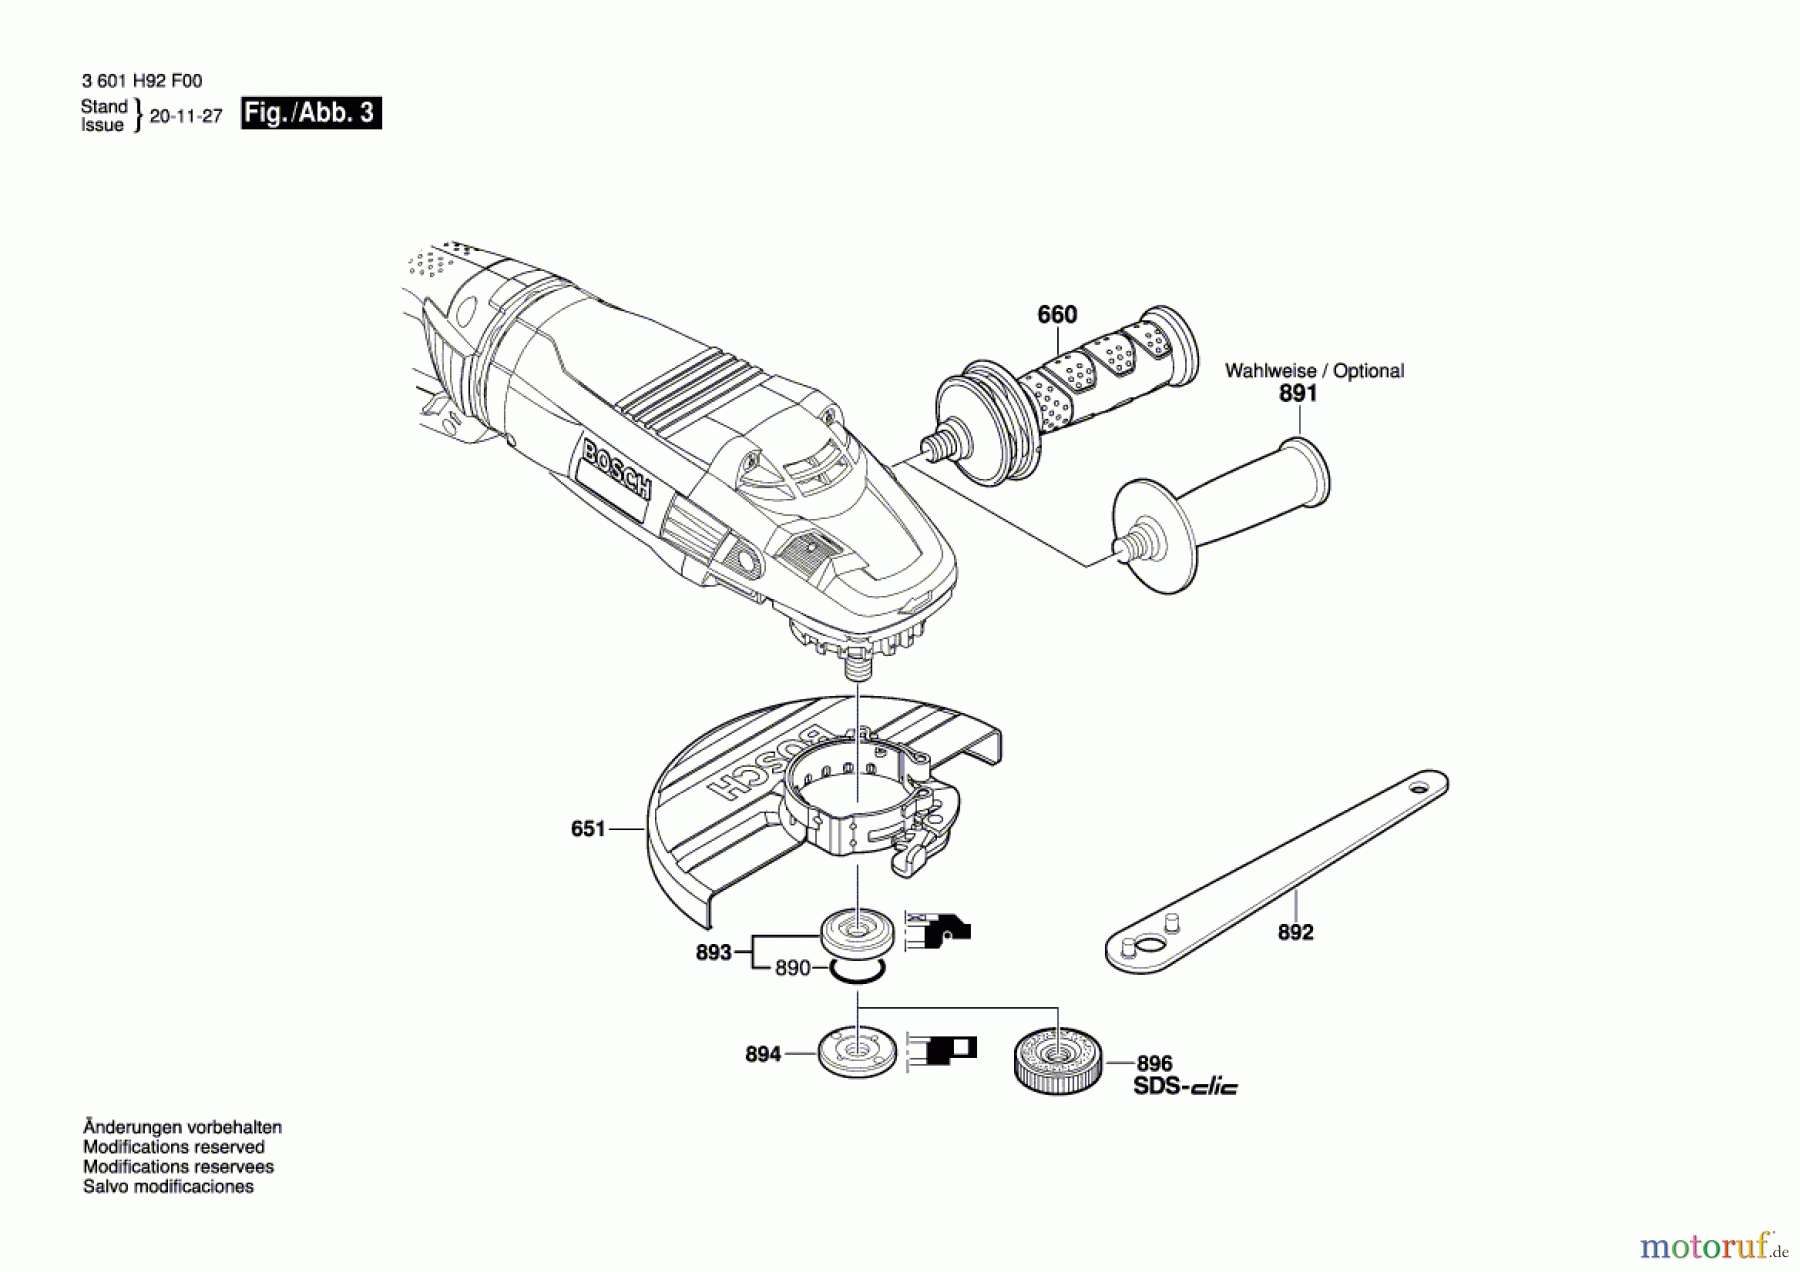  Bosch Werkzeug Winkelschleifer GWS 26-230 LVI Seite 3